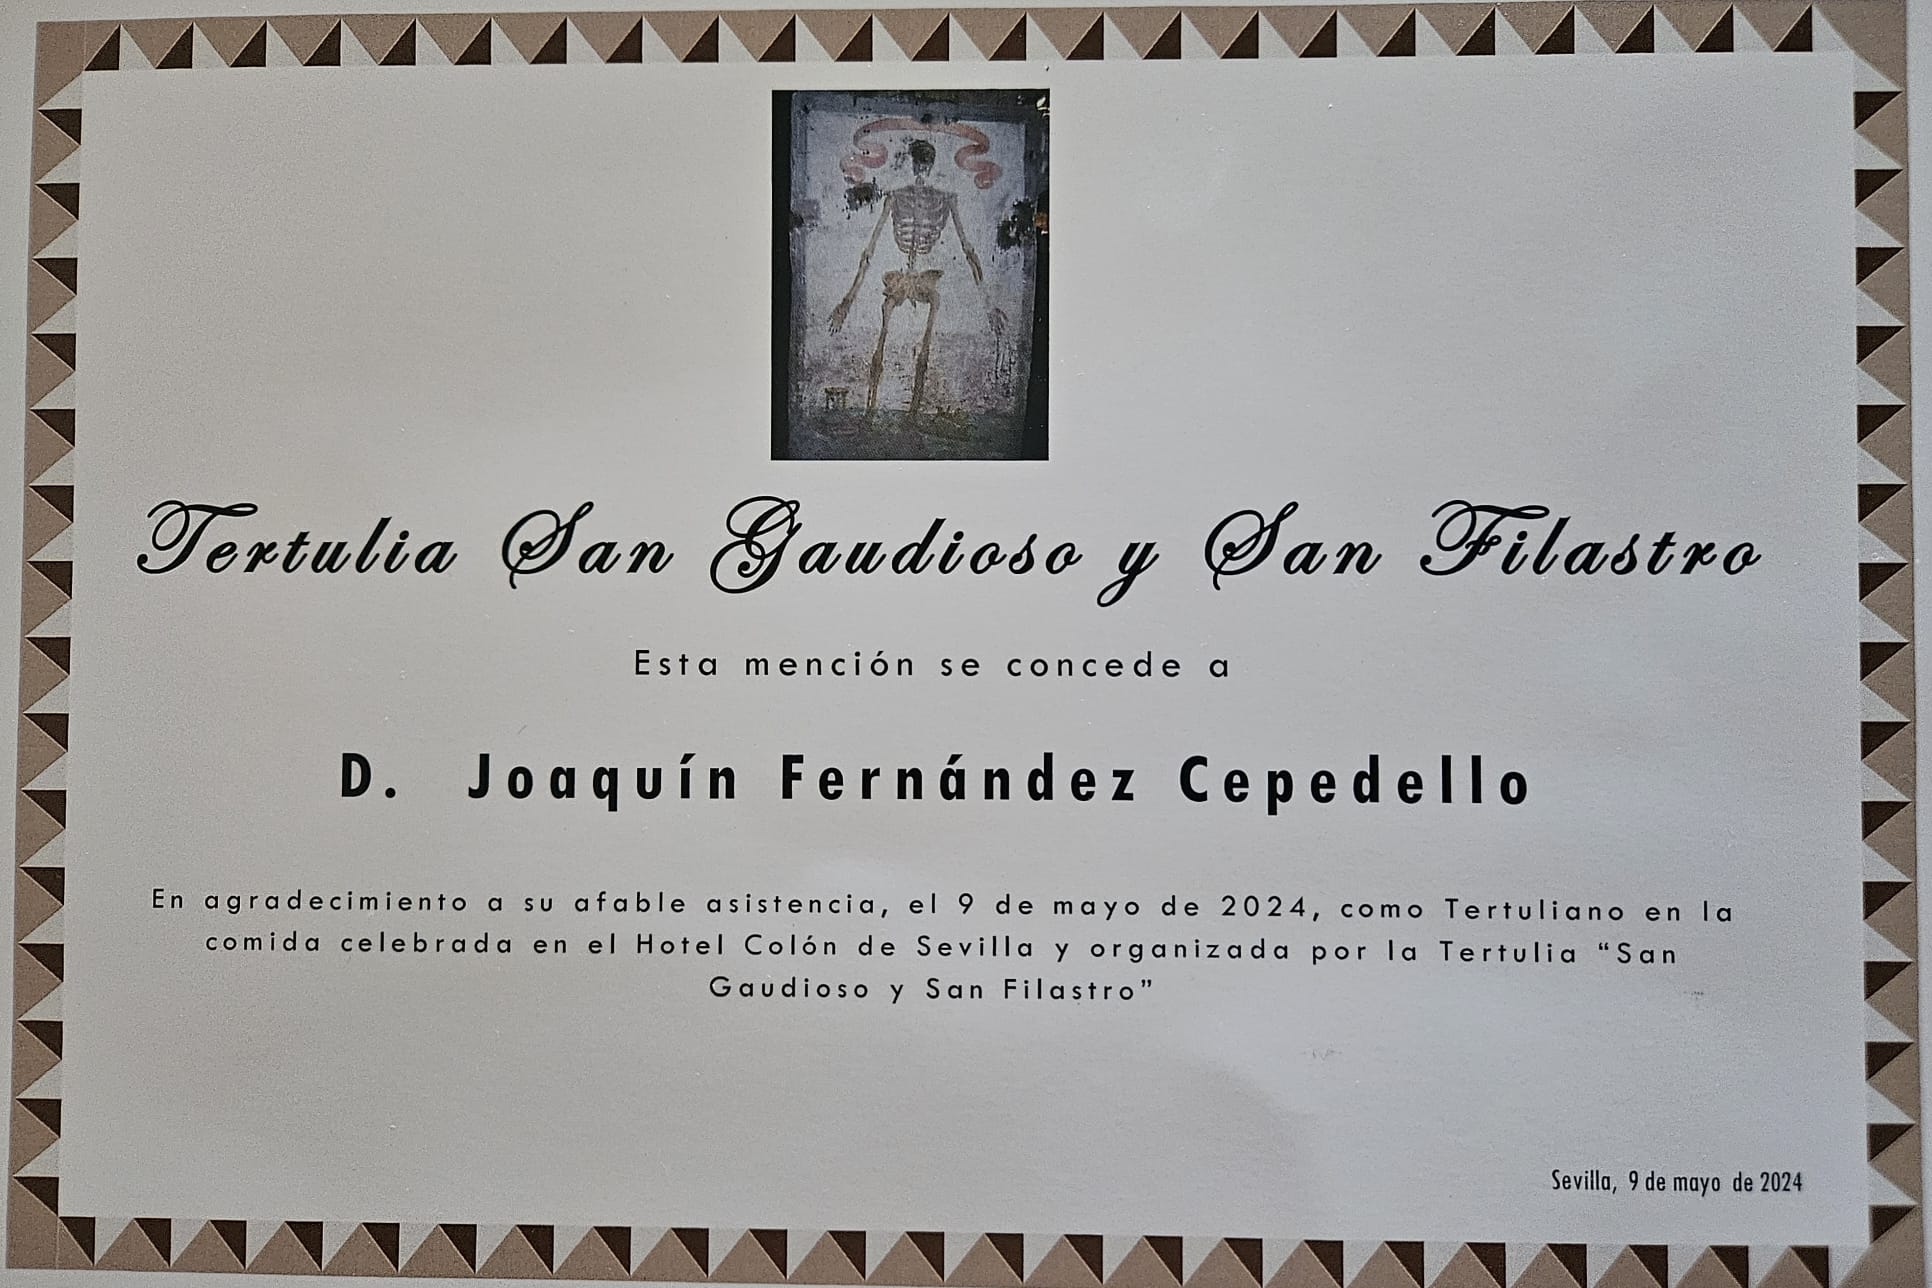 Diploma entregado al invitado Joaquín Fernández Cepedello por parte de la Tertulia San Gaudioso y San Filastro